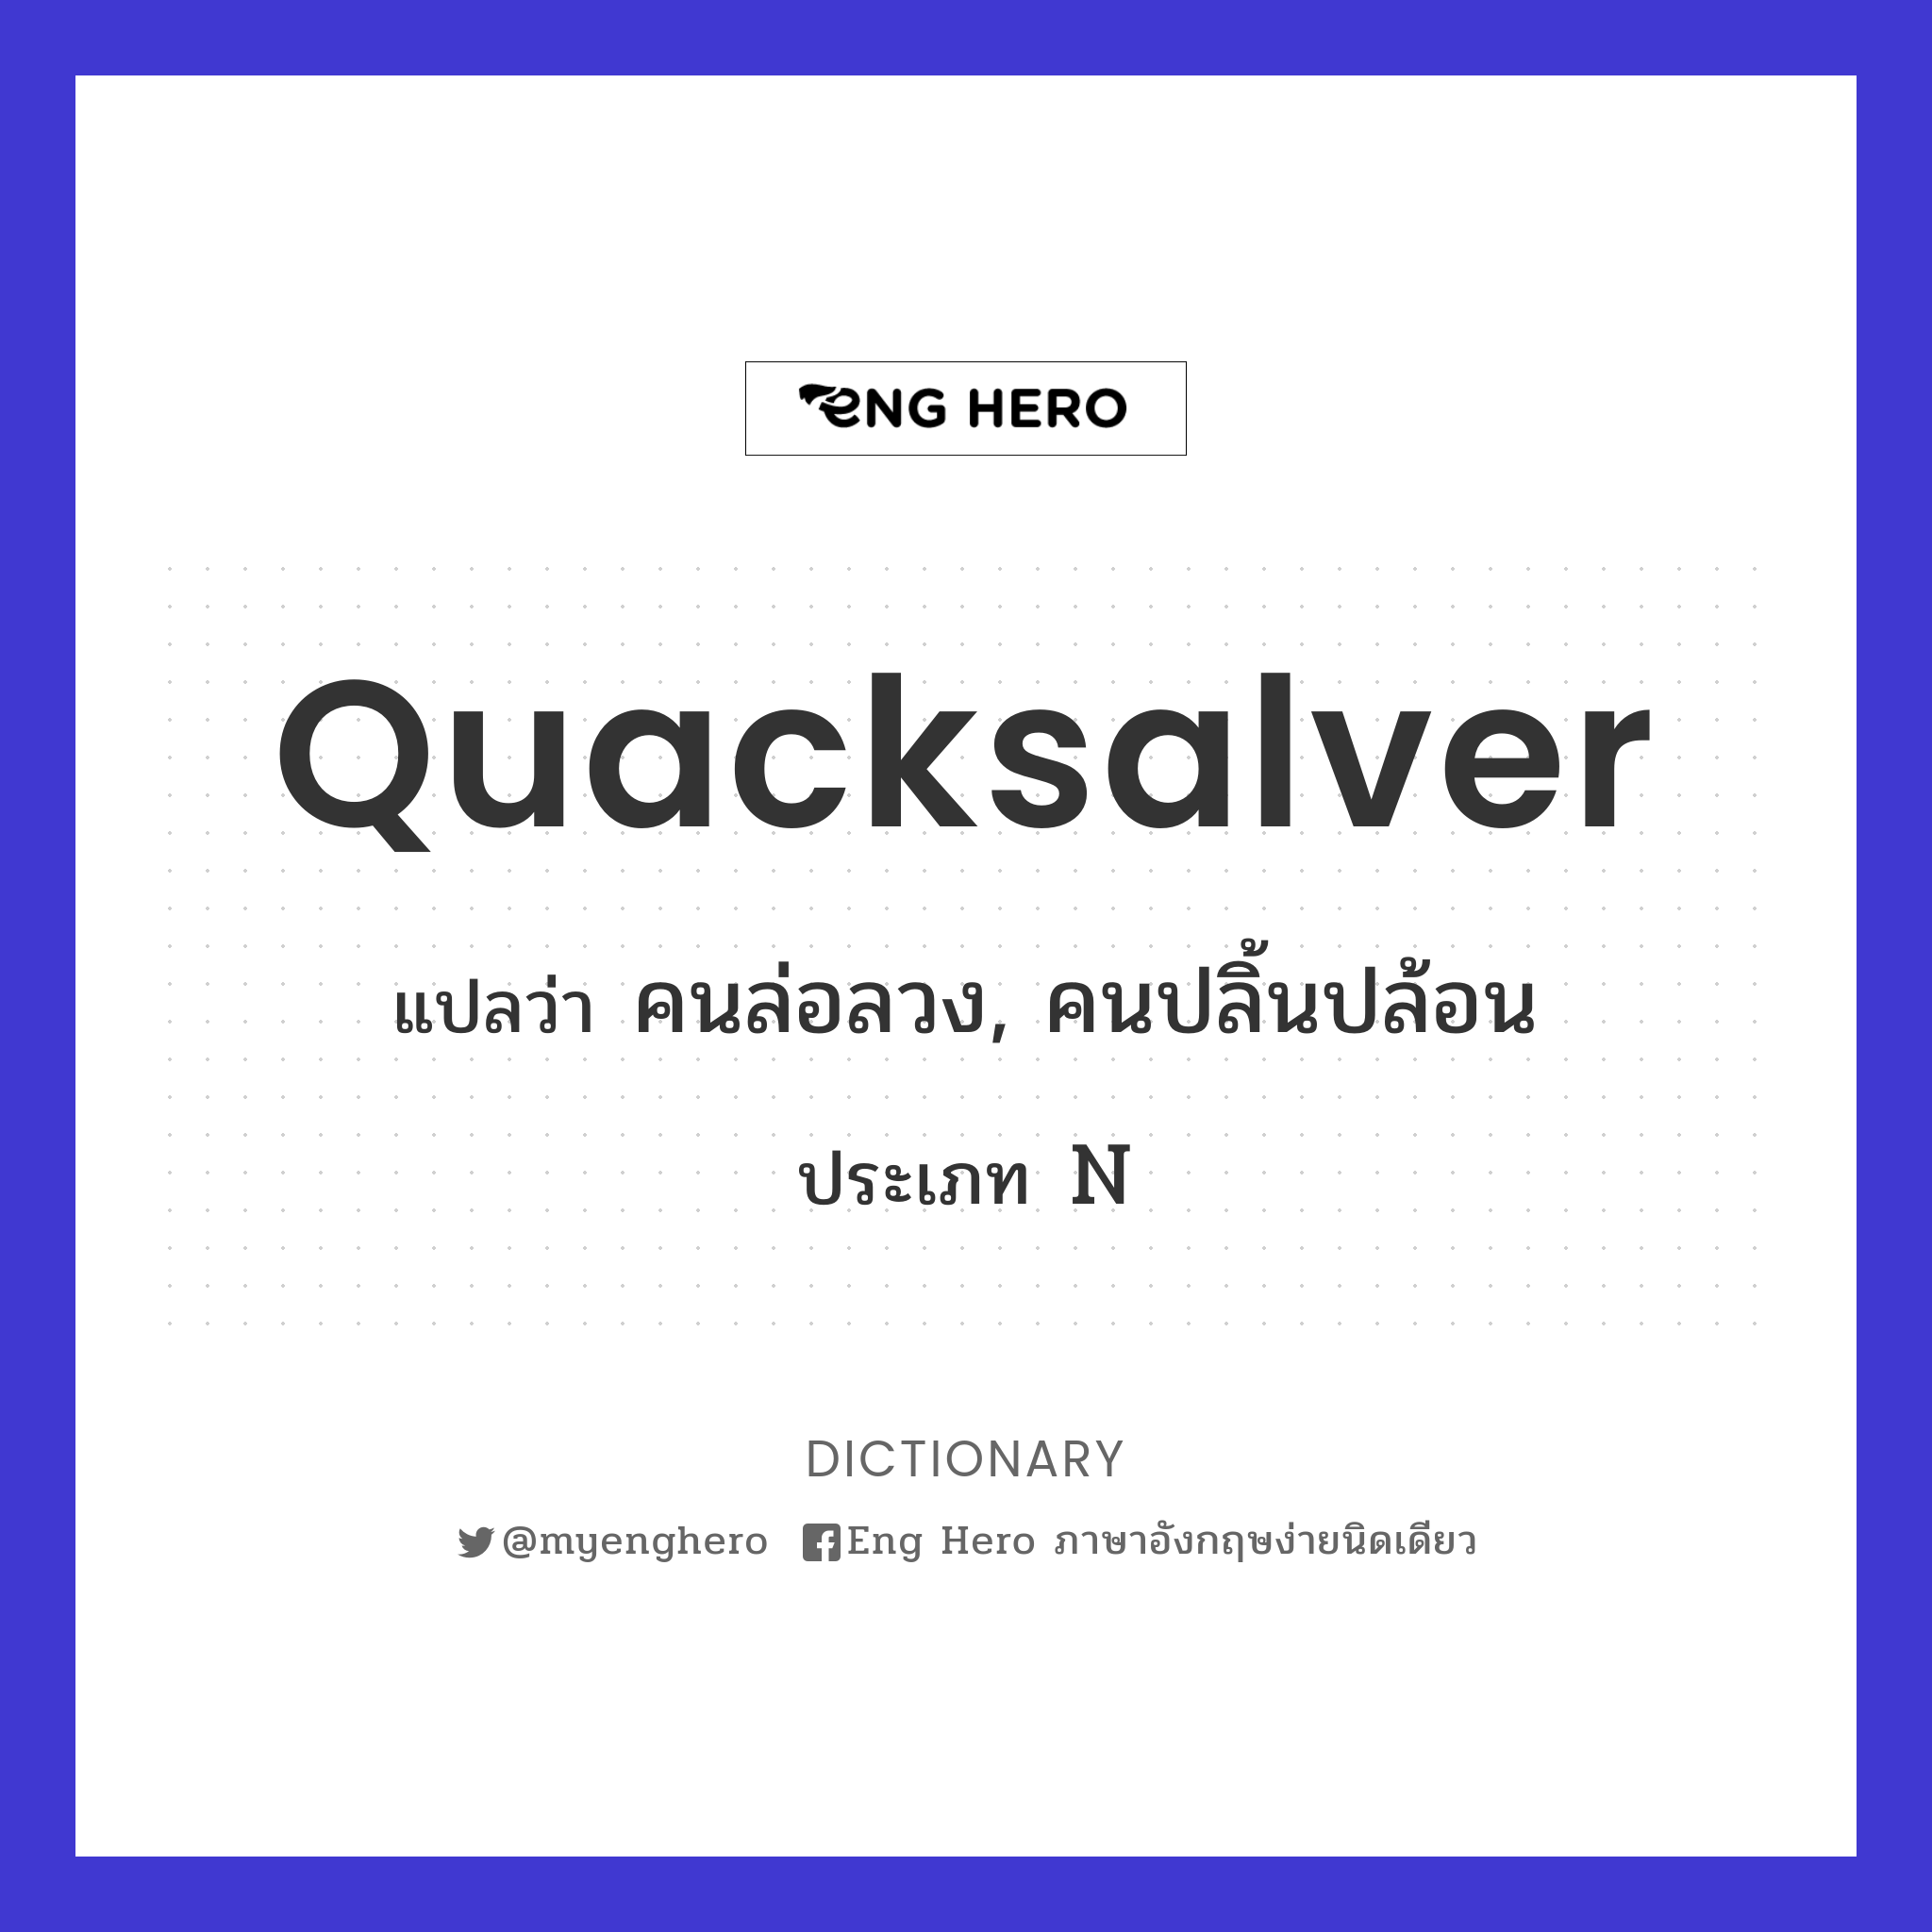 quacksalver